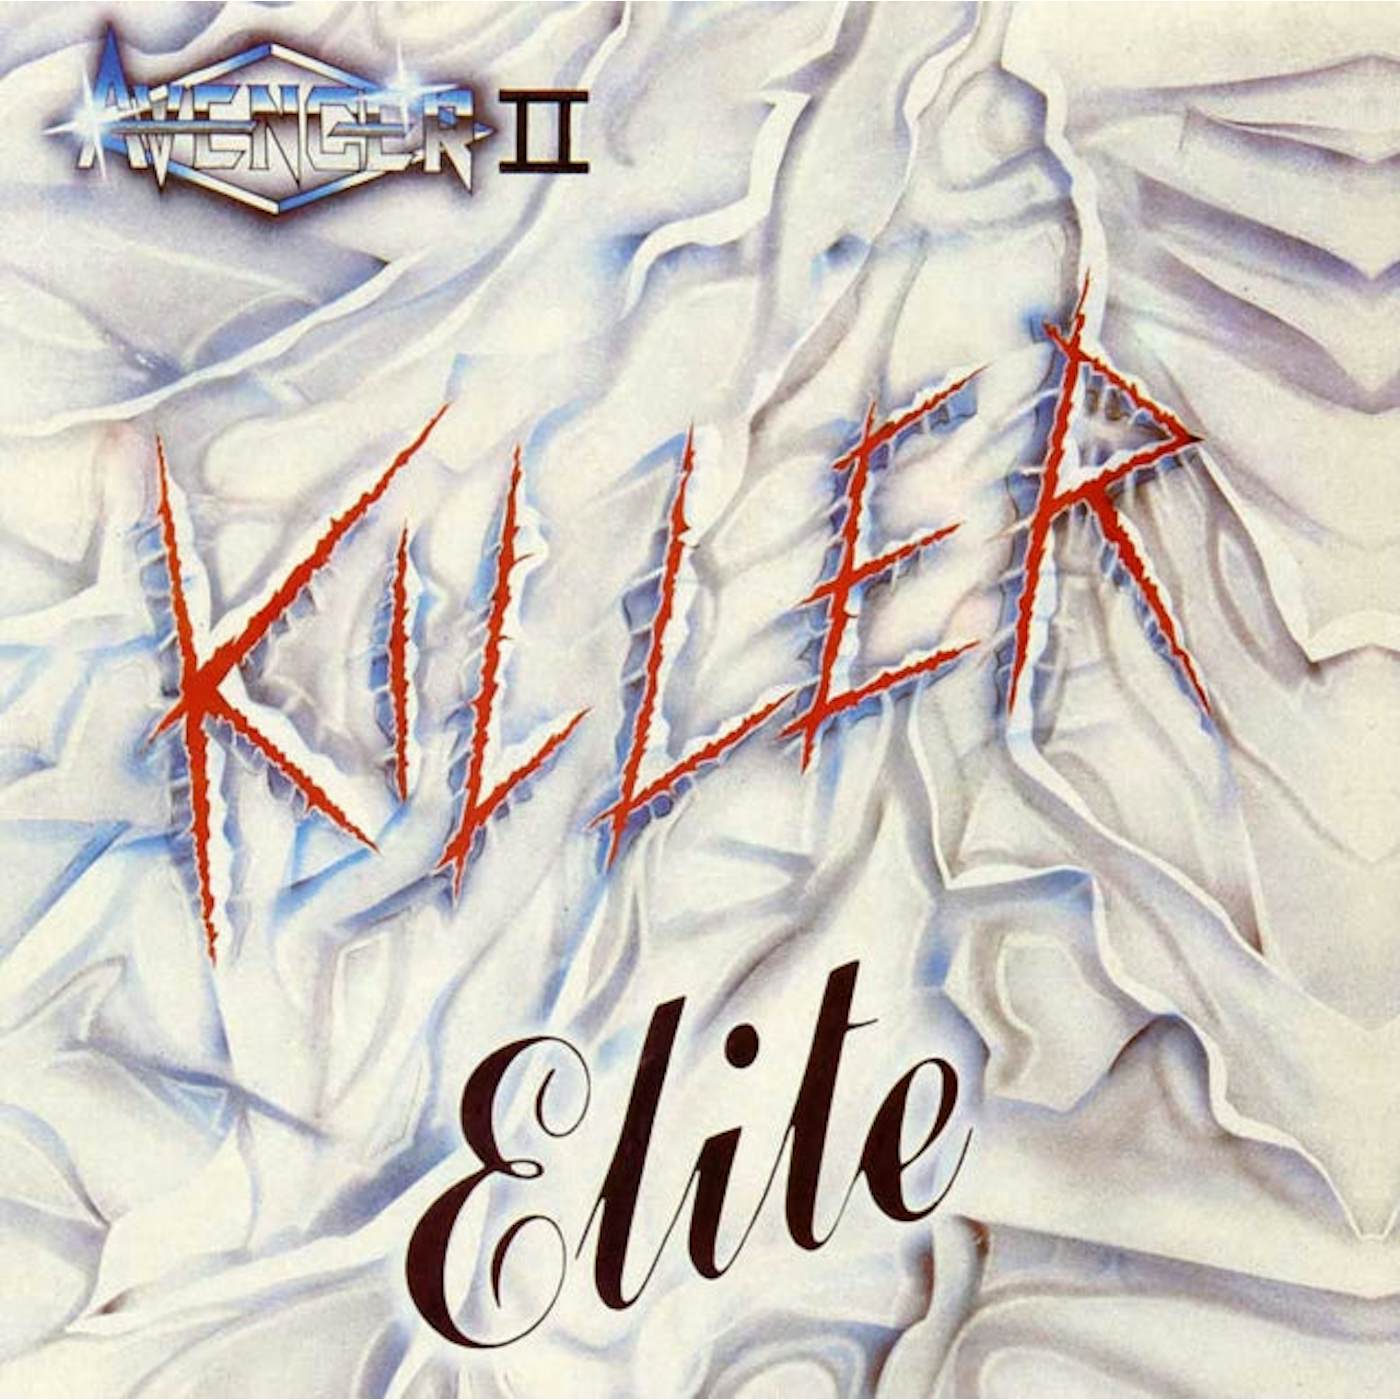 Avenger CD - Killer Elite